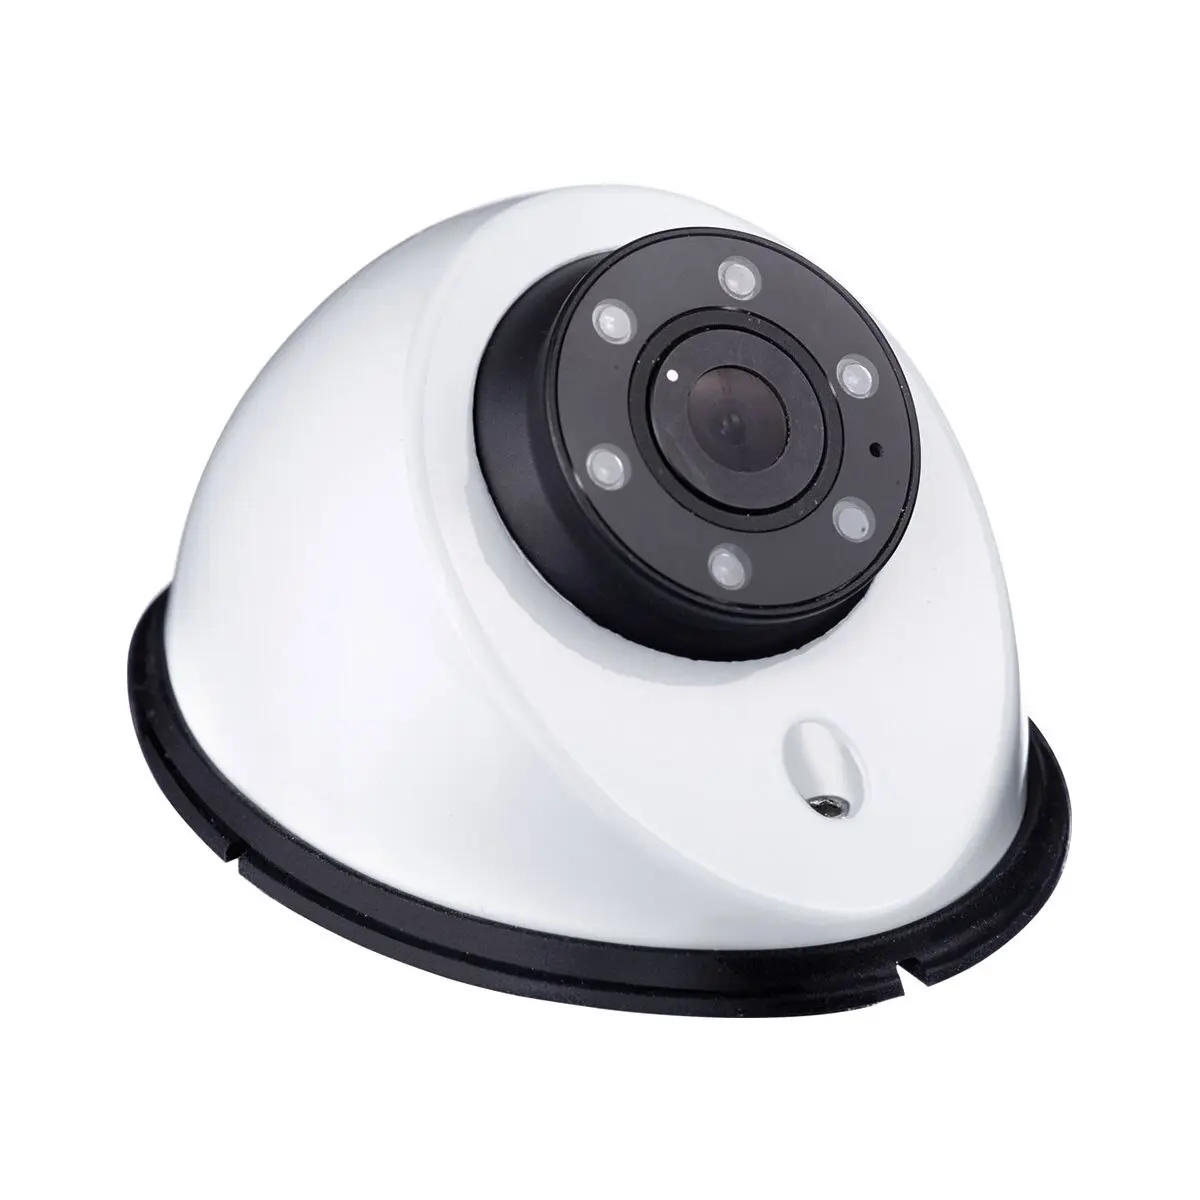 Zadná kamera CAM 18 NAV pre navigačné systémy, biela